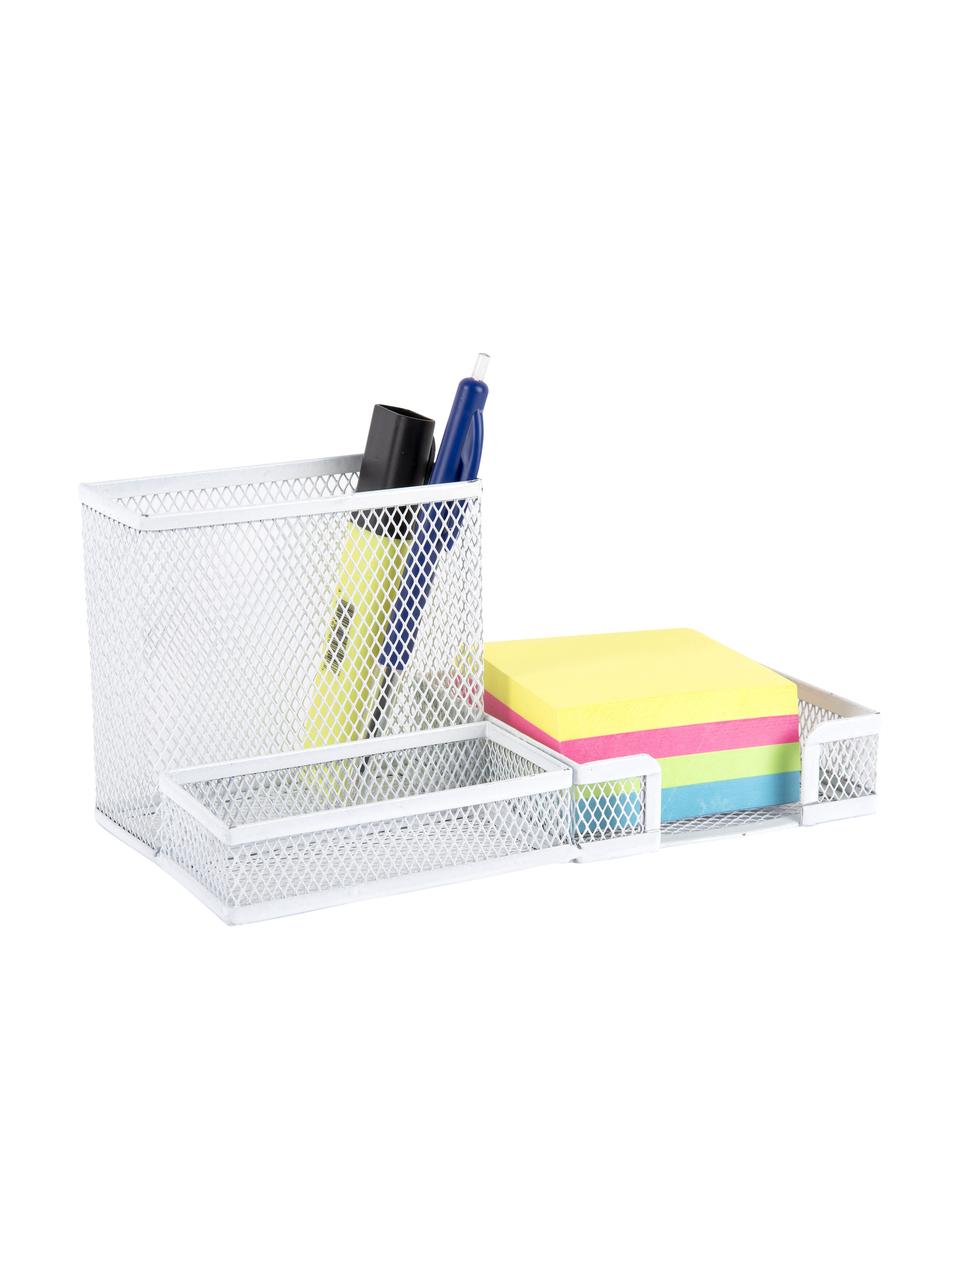 Büro-Organizer Essentials in Weiß, Metall, beschichtet, Weiß, B 22 x T 10 cm